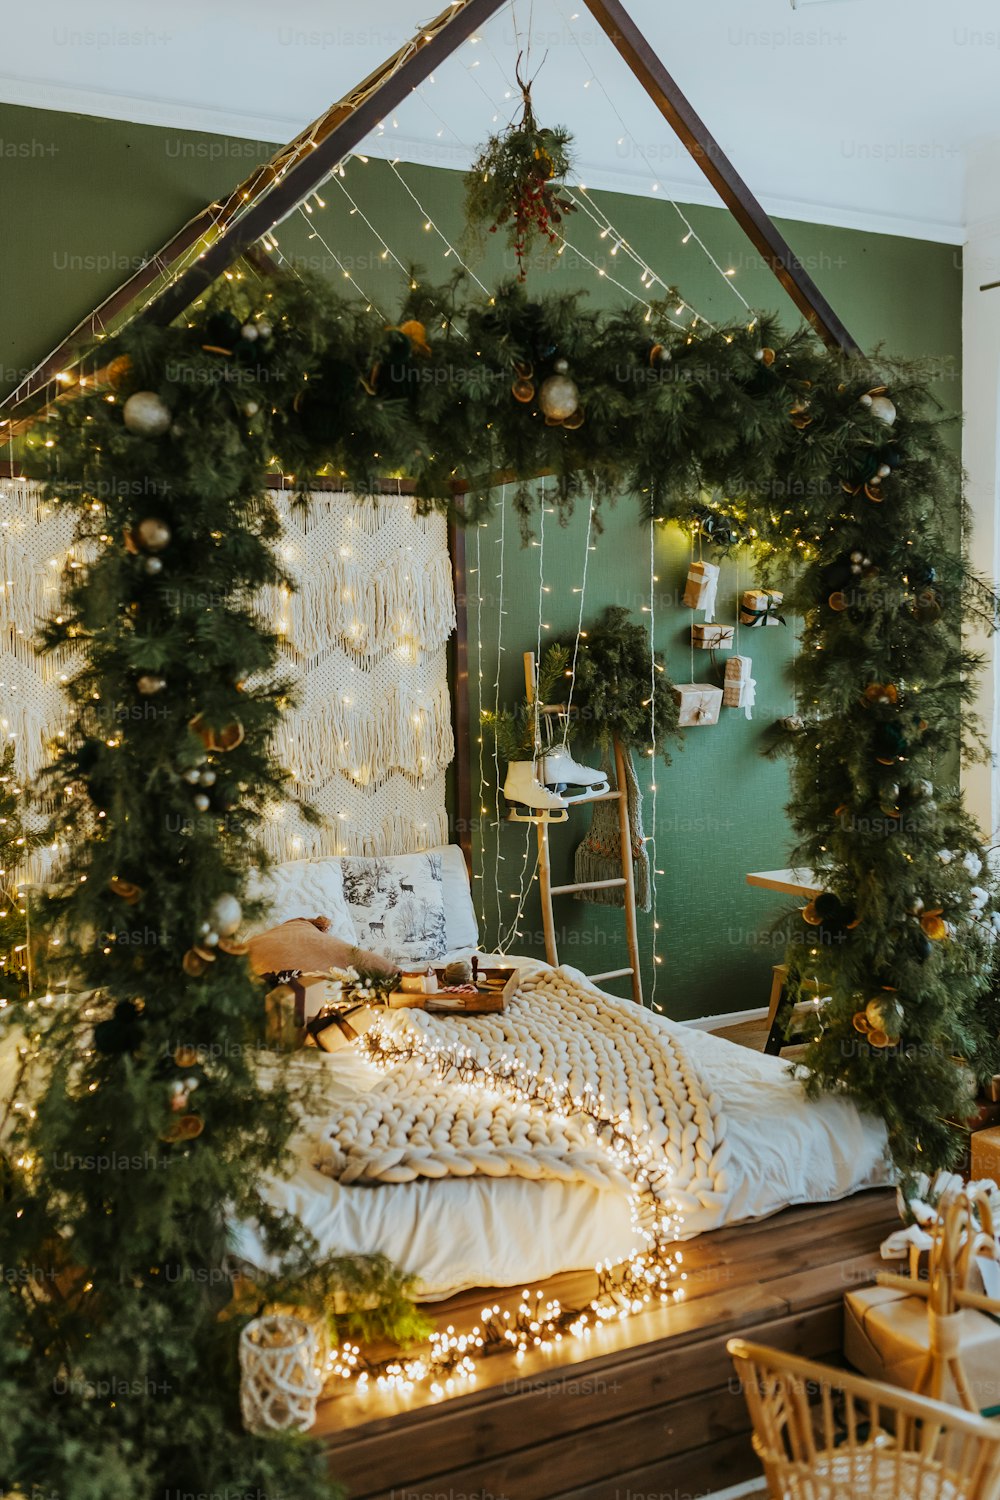 Una camera da letto addobbata per Natale con ghirlanda e luci